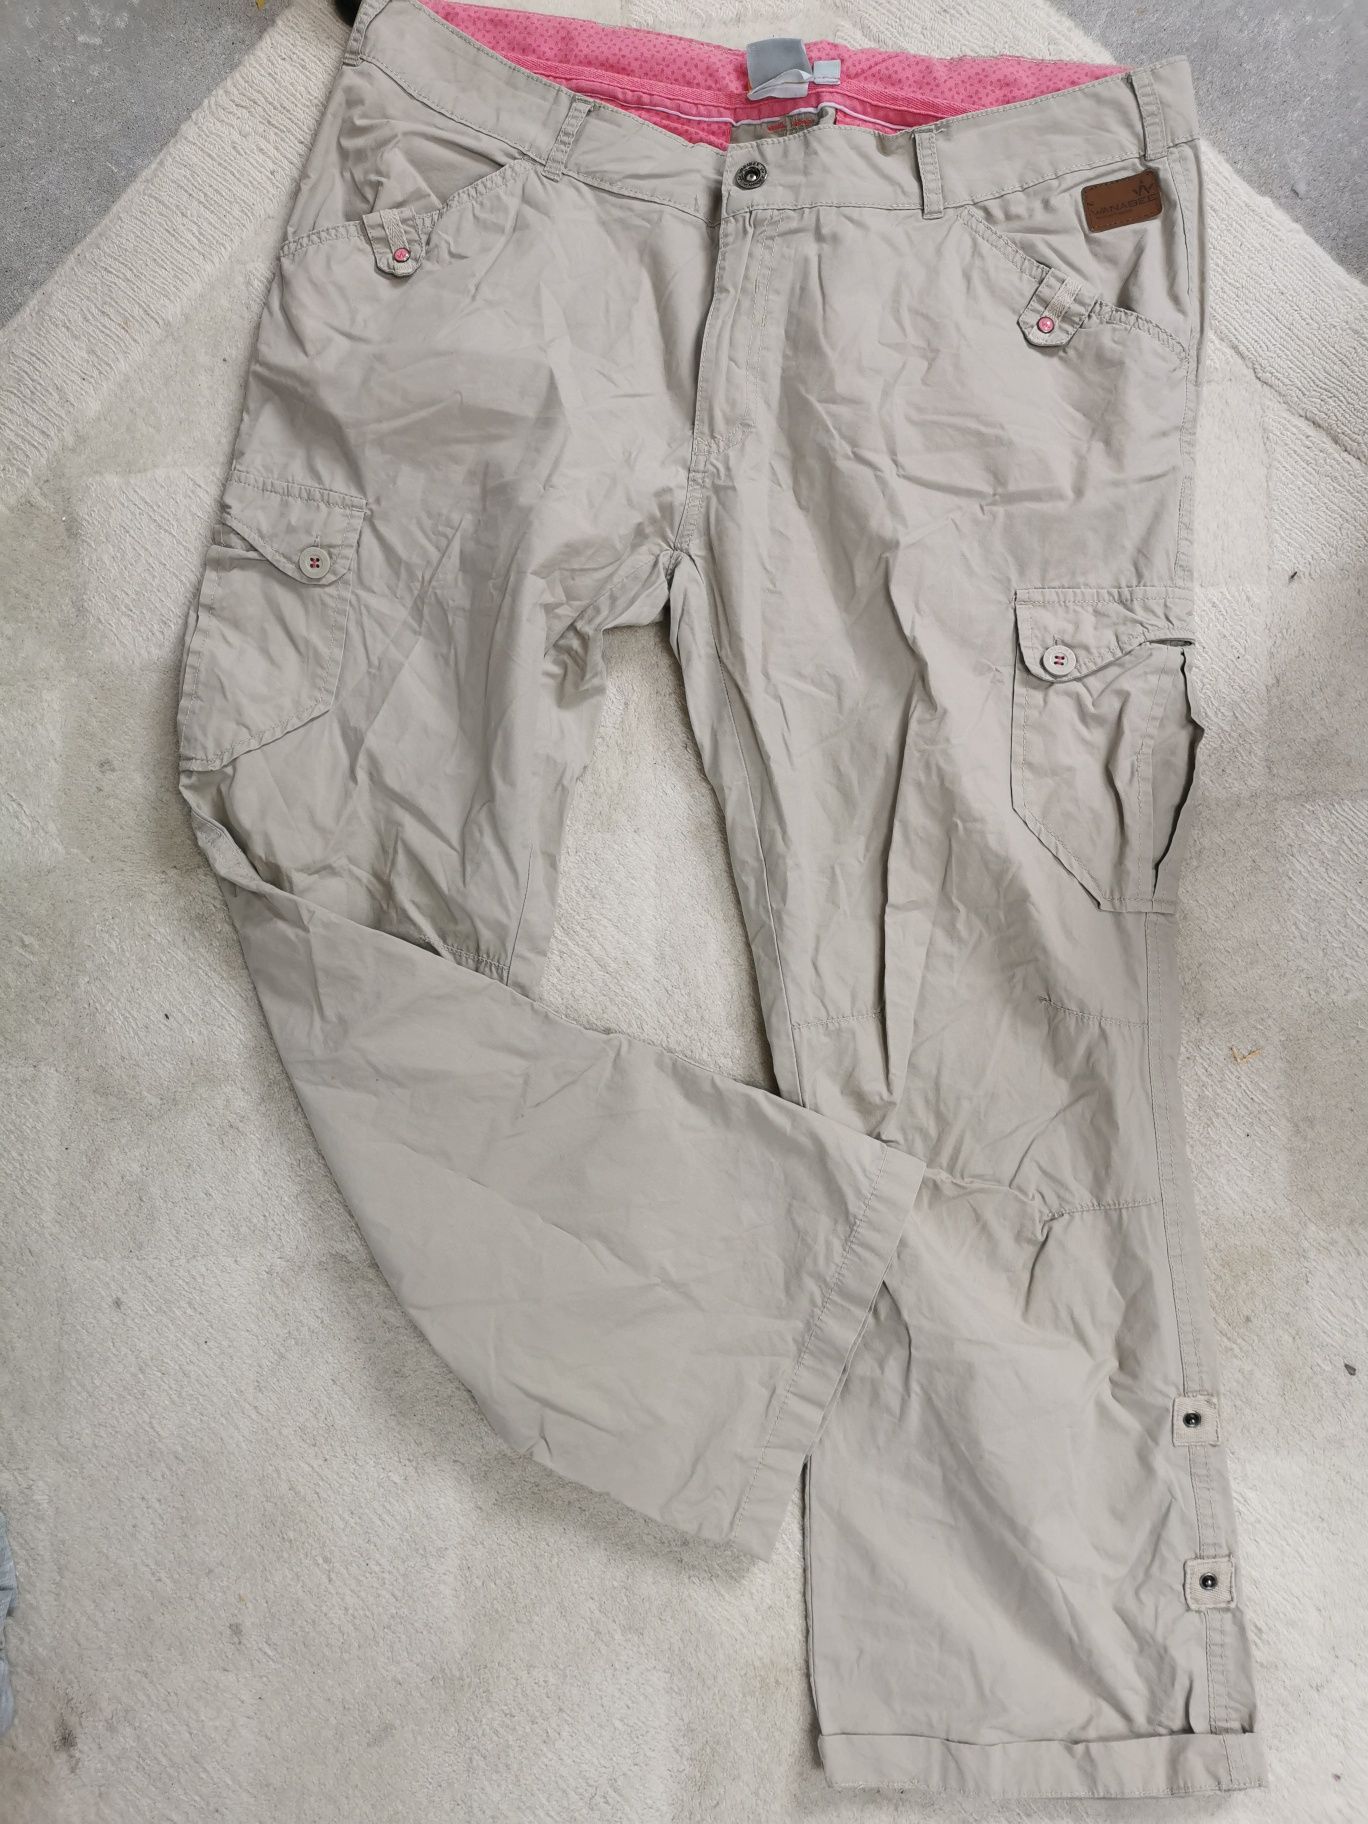 Spodnie damskie XL Wanabee trekkingowe bojówki kremowe XL